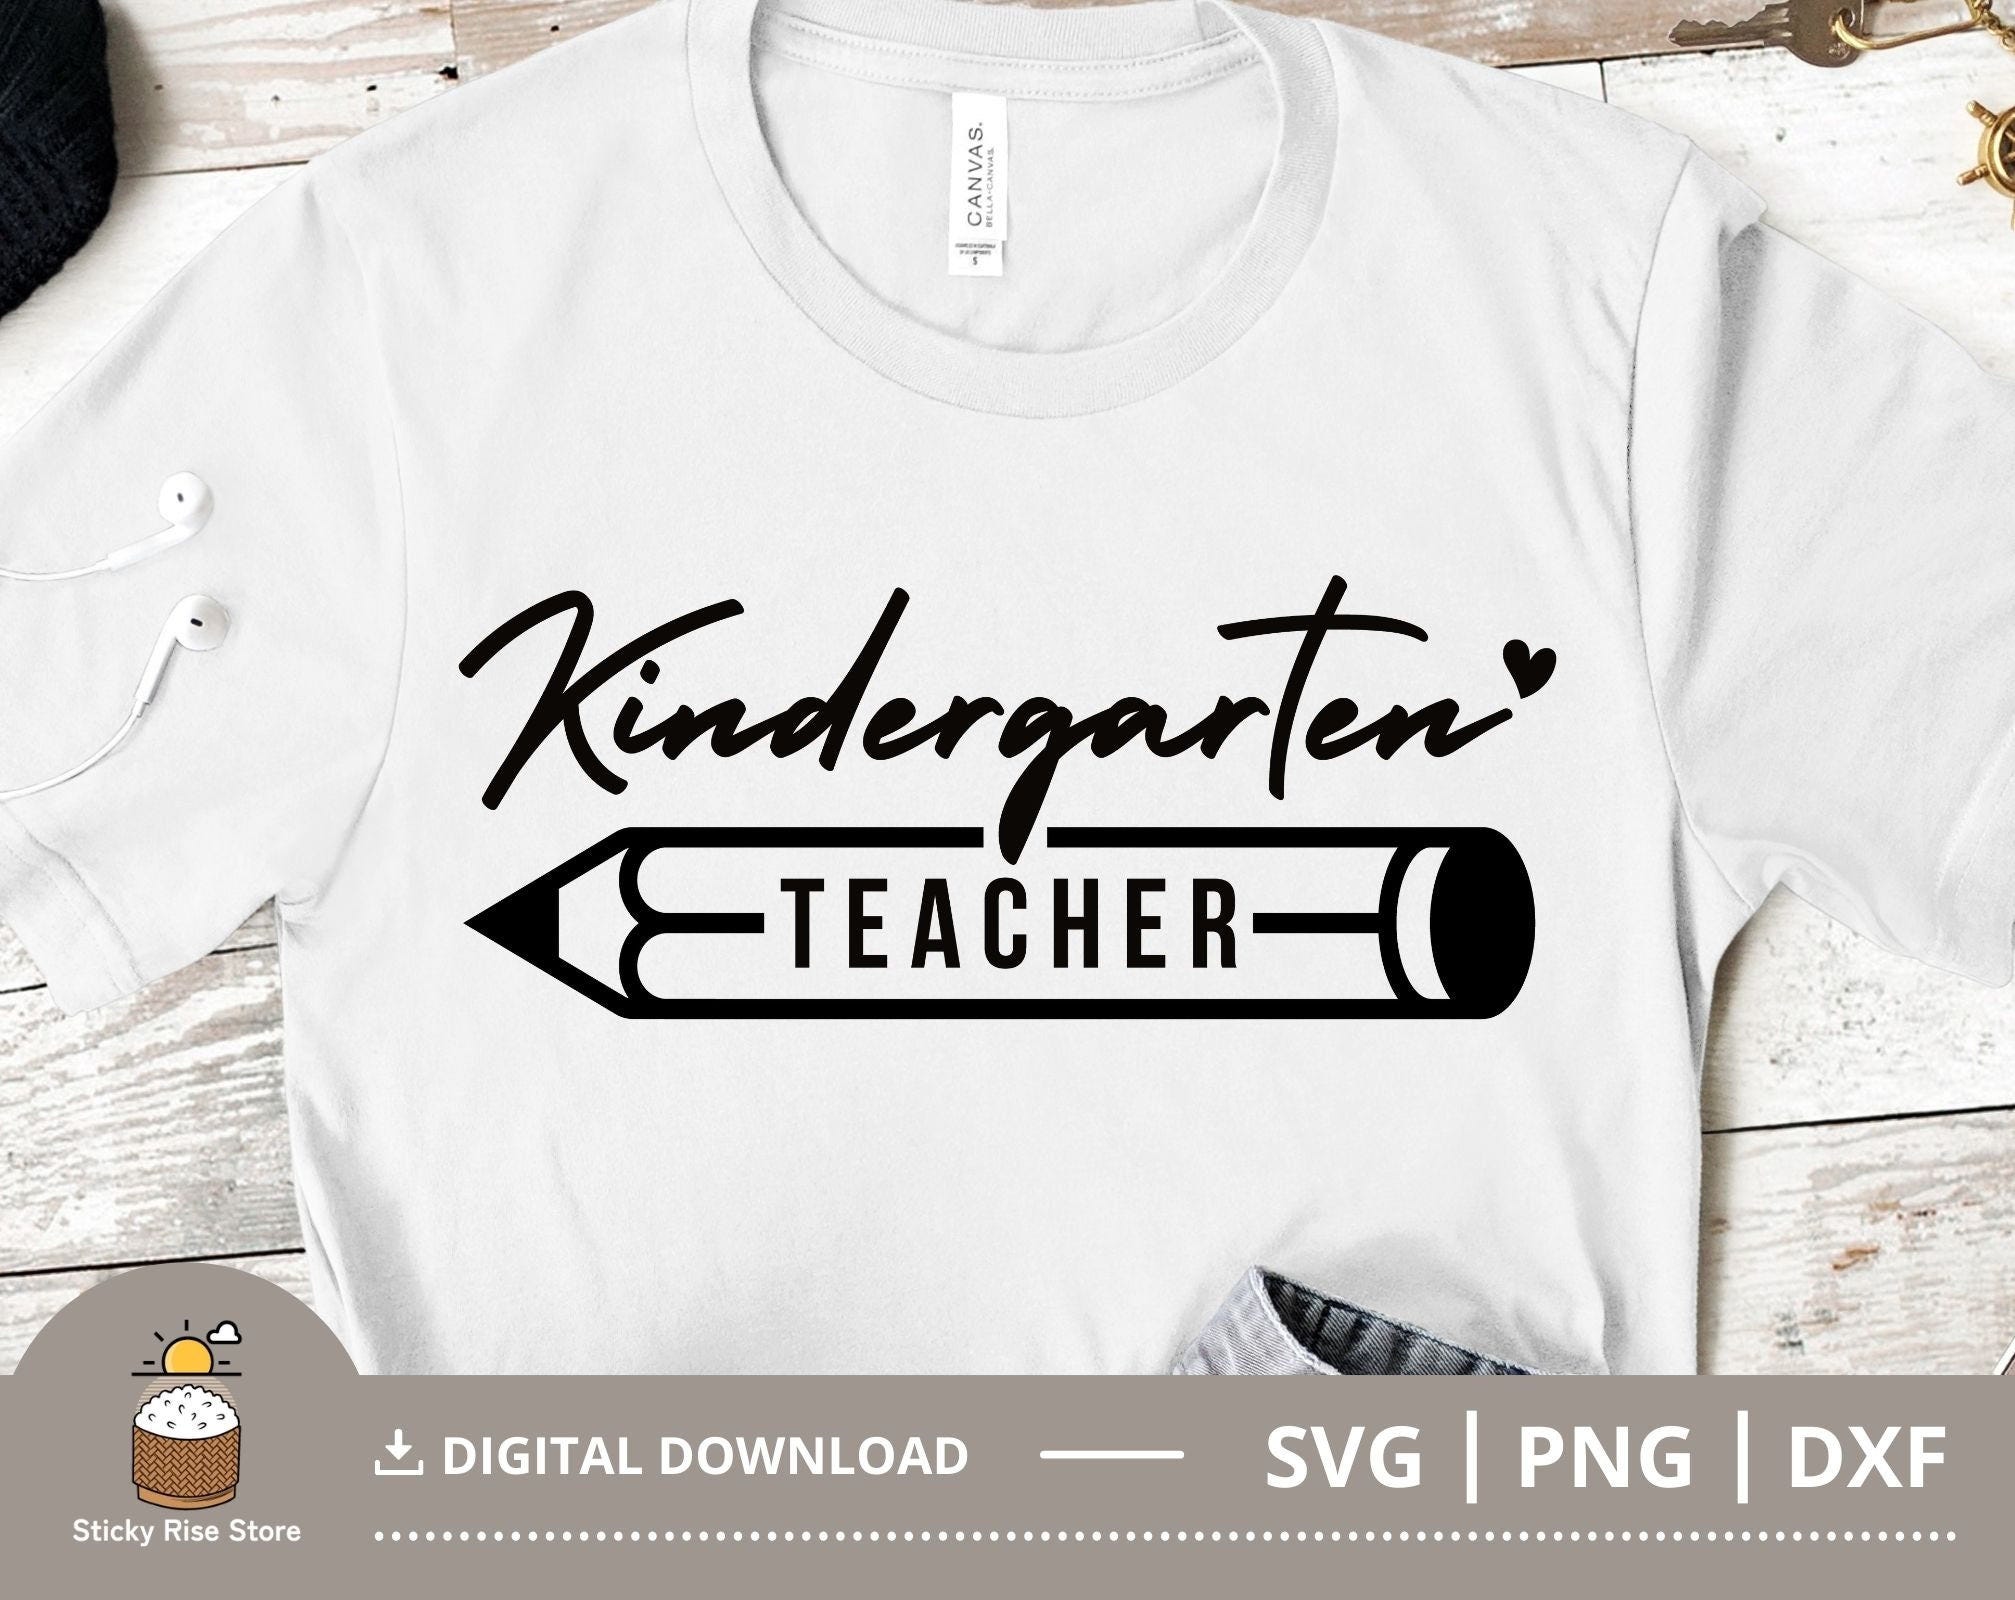 Kindergarten Teacher SVG, Kindergarten Squad Shirt Svg, Kindergarten SVG PNG, Back to School Svg, Cut File for Cricut, Digital Download File